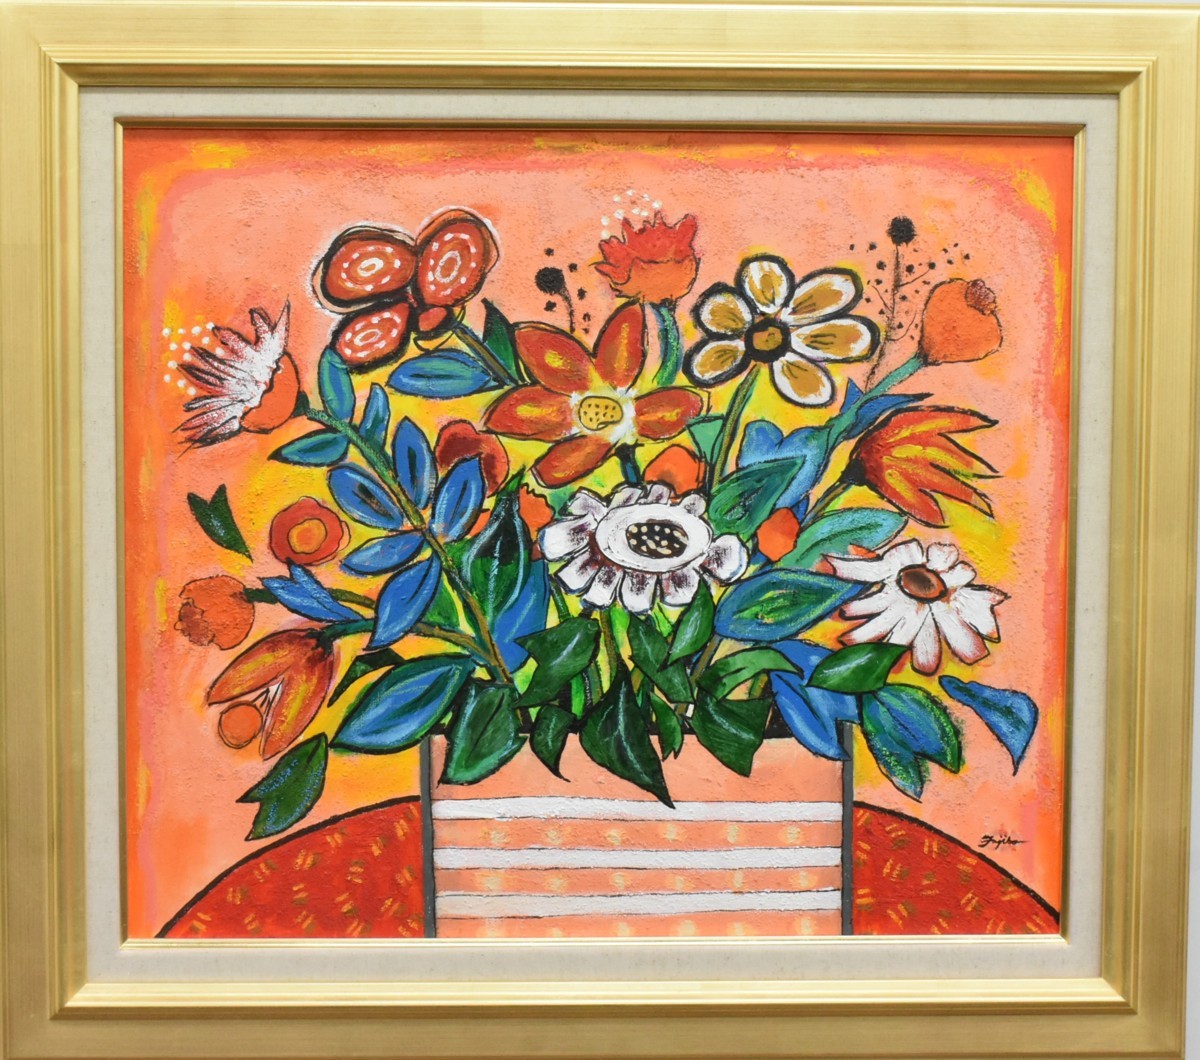 [Masami Gallery] Ein neues Ölgemälde eines beliebten Künstlers! Fujiko Shirai, Nr. 10 Blumenstrauß gesendet [5, 000 Stücke ausgestellt! Sie werden sicher ein Stück finden, das Ihnen gefällt], Malerei, Ölgemälde, Stillleben